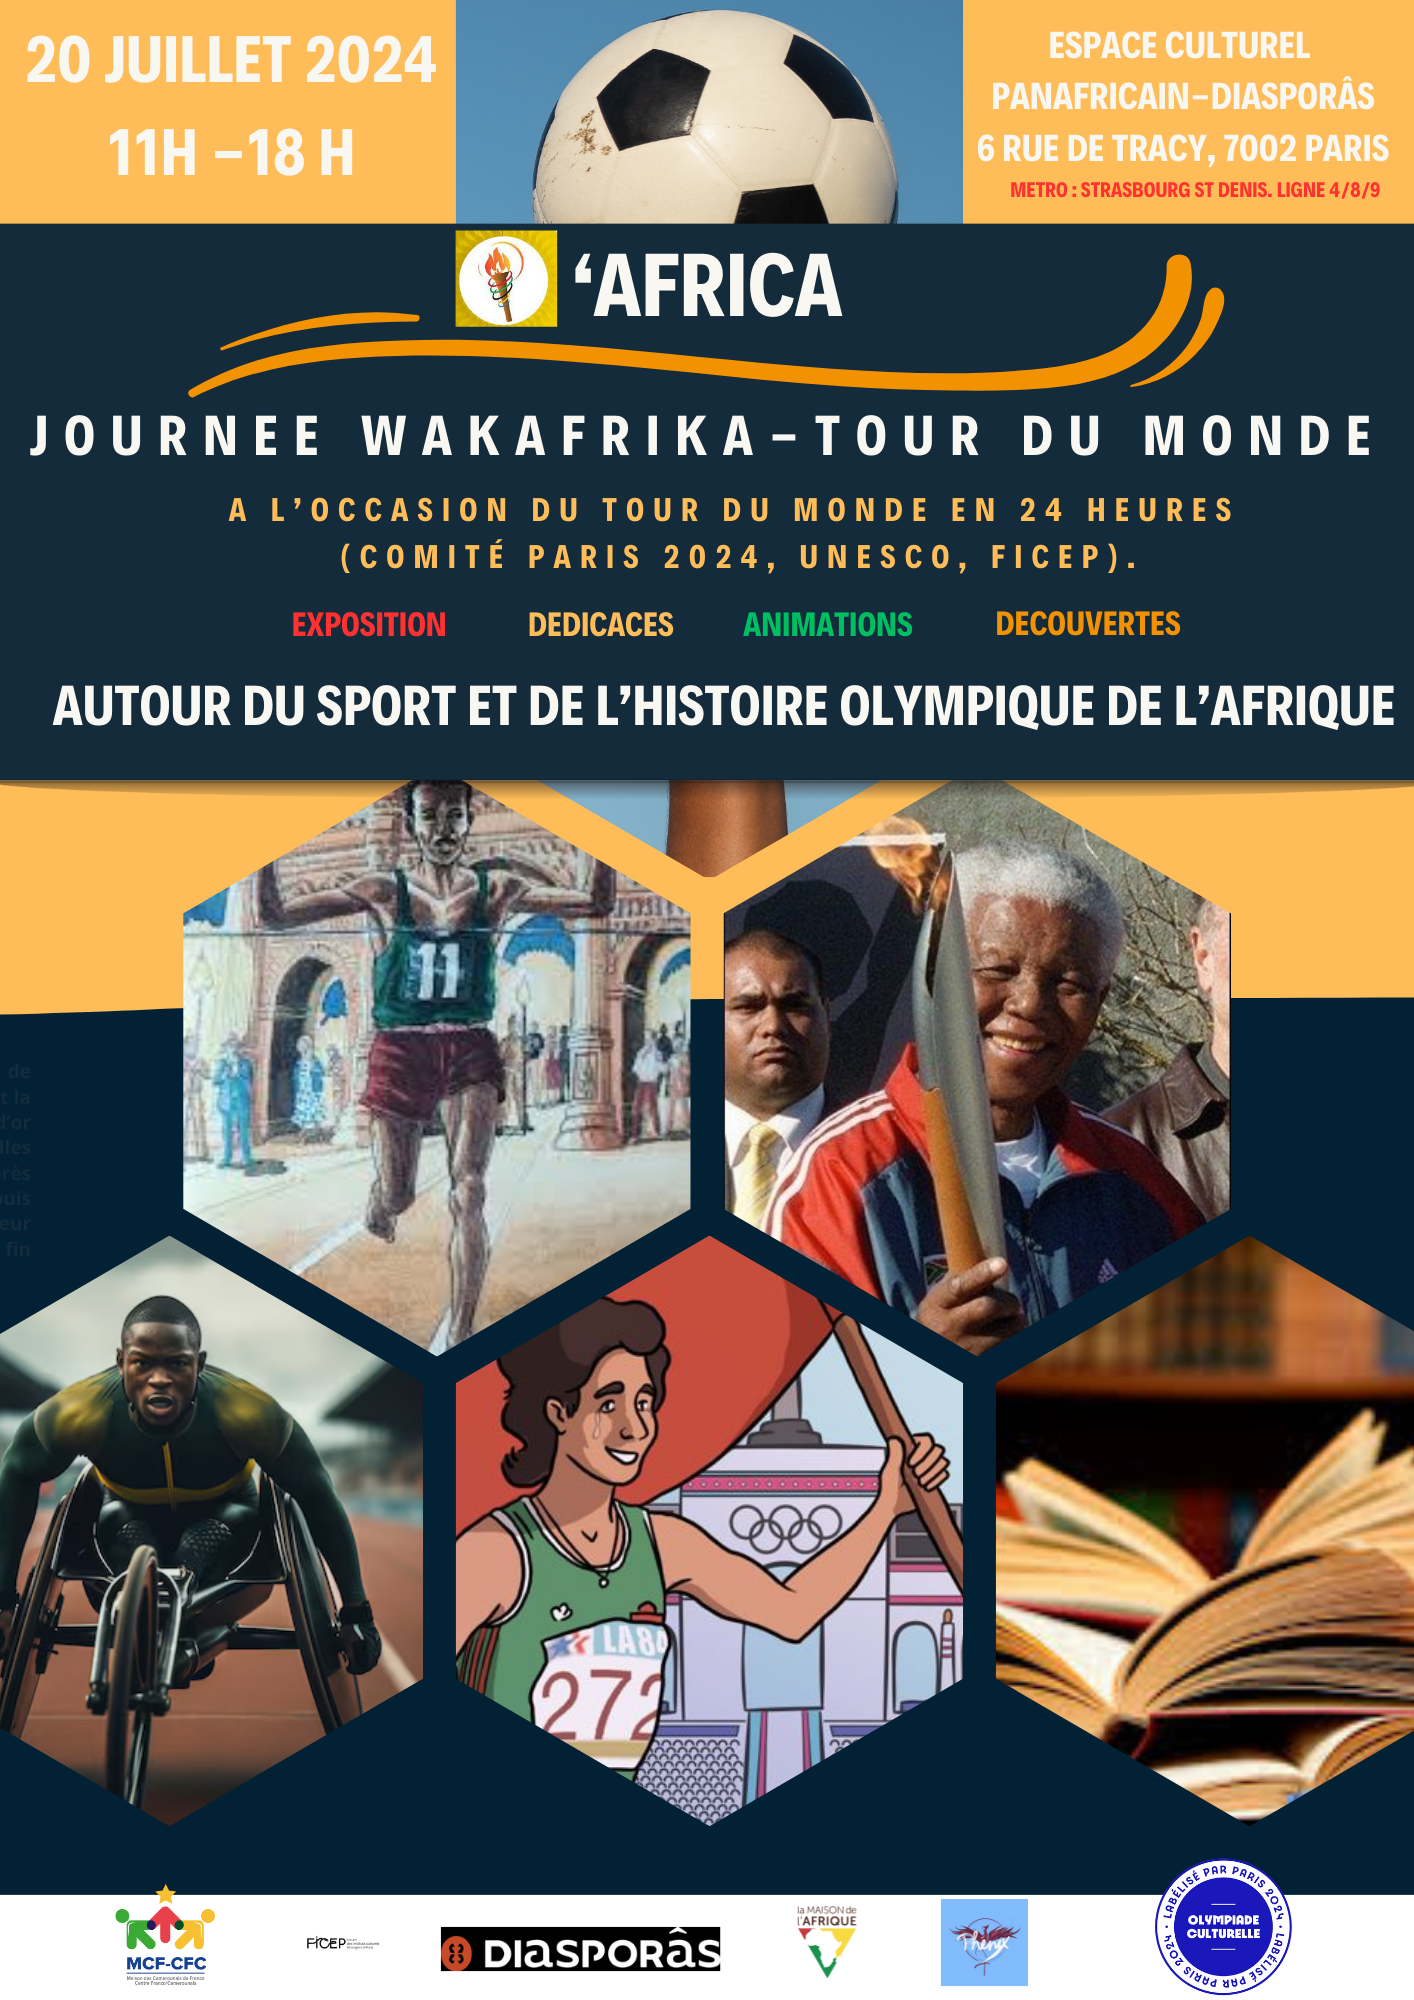 12h15 à 14h00 - Maison des Camerounais de France 